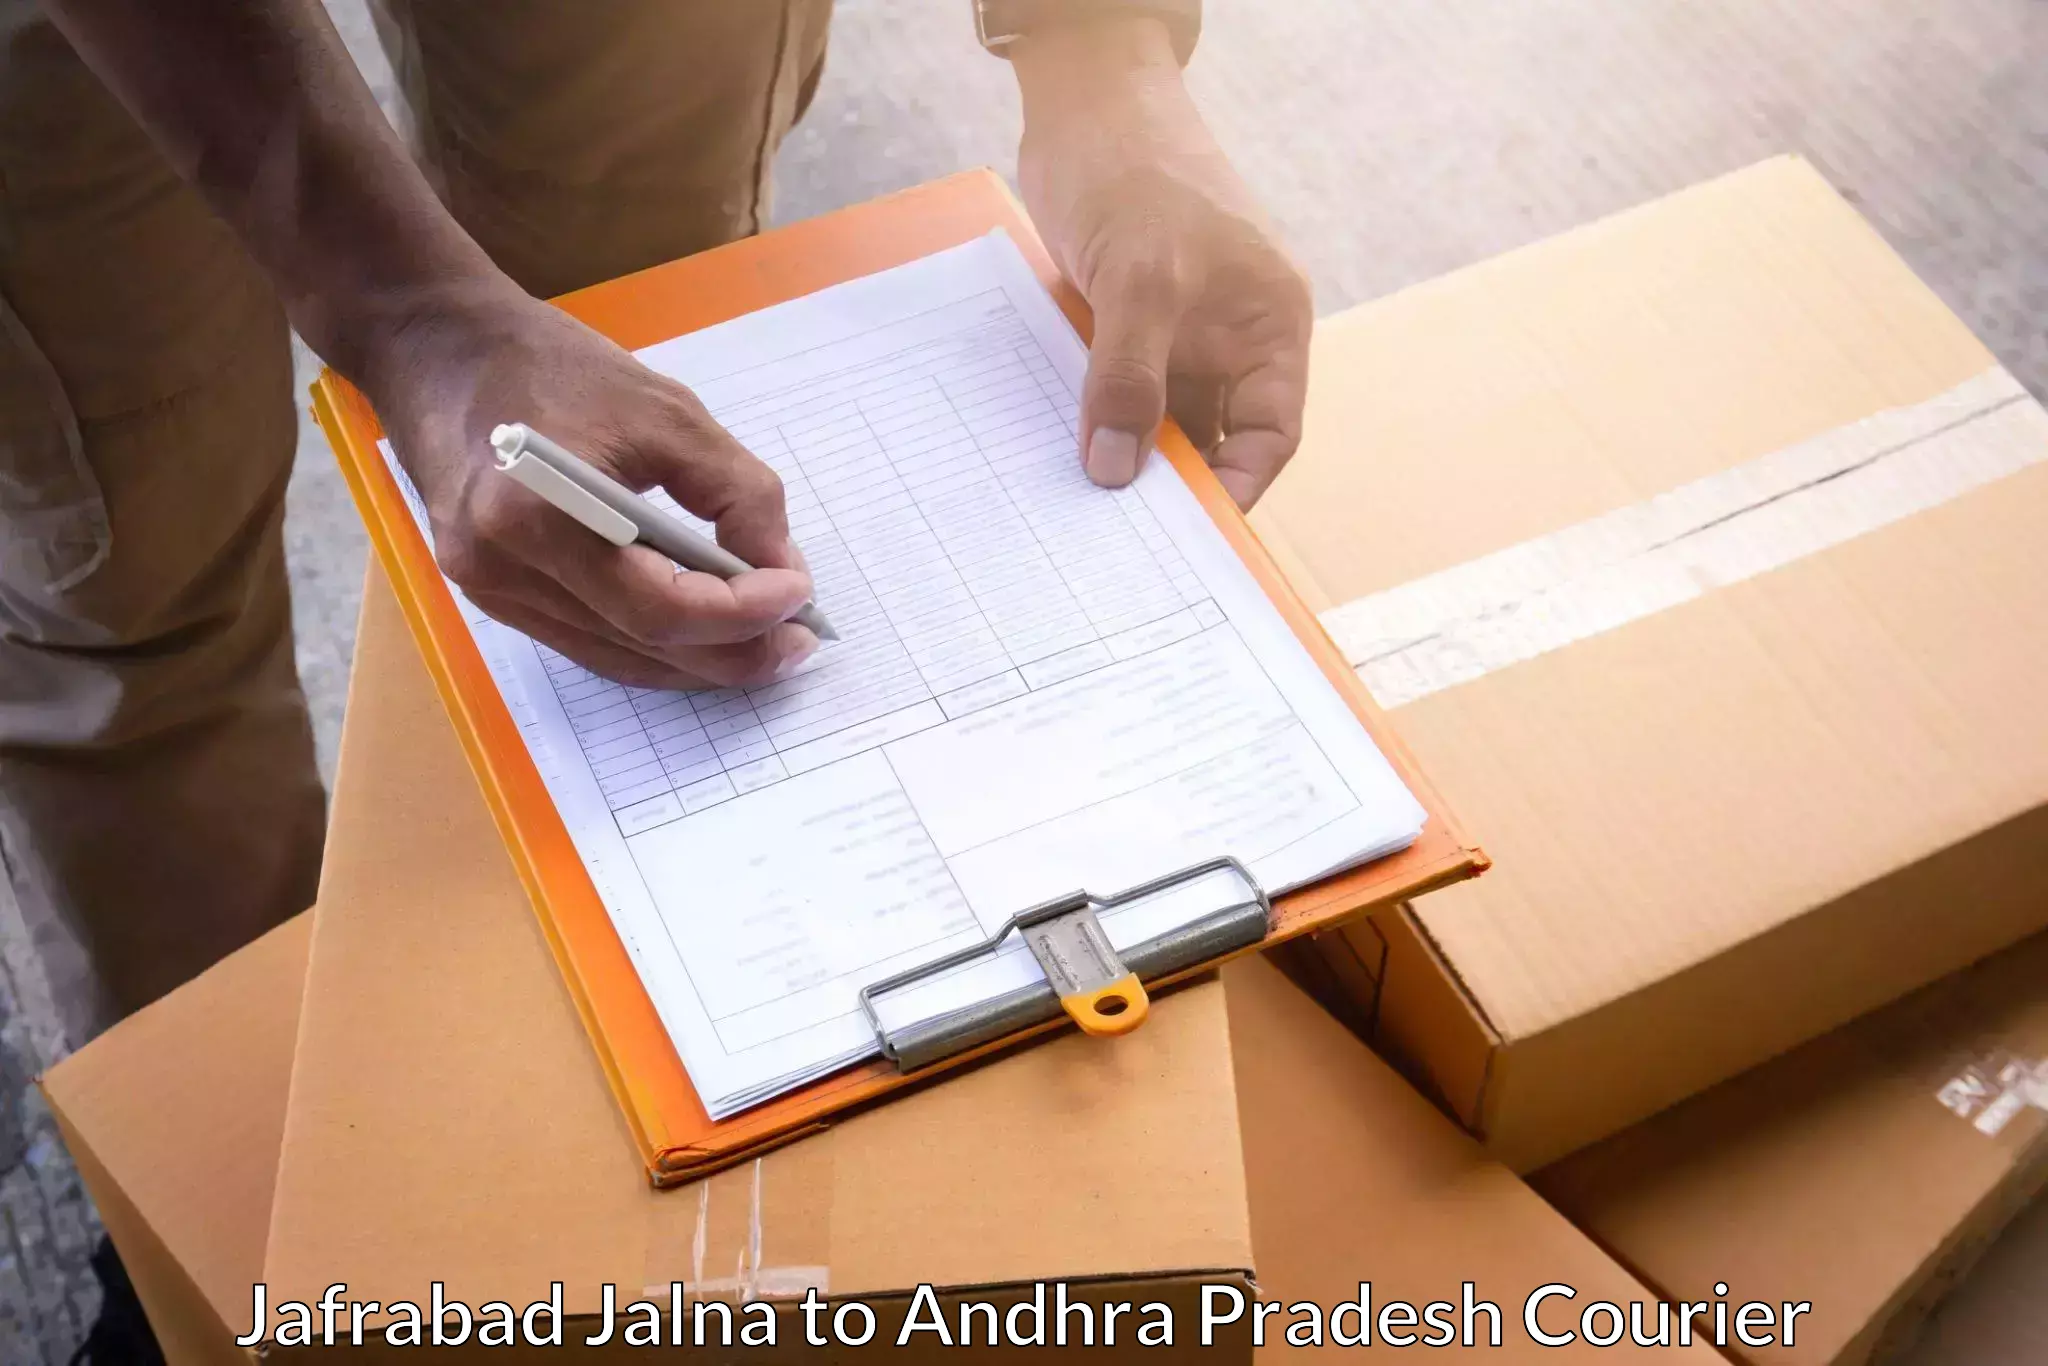 Modern courier technology Jafrabad Jalna to Visakhapatnam Port